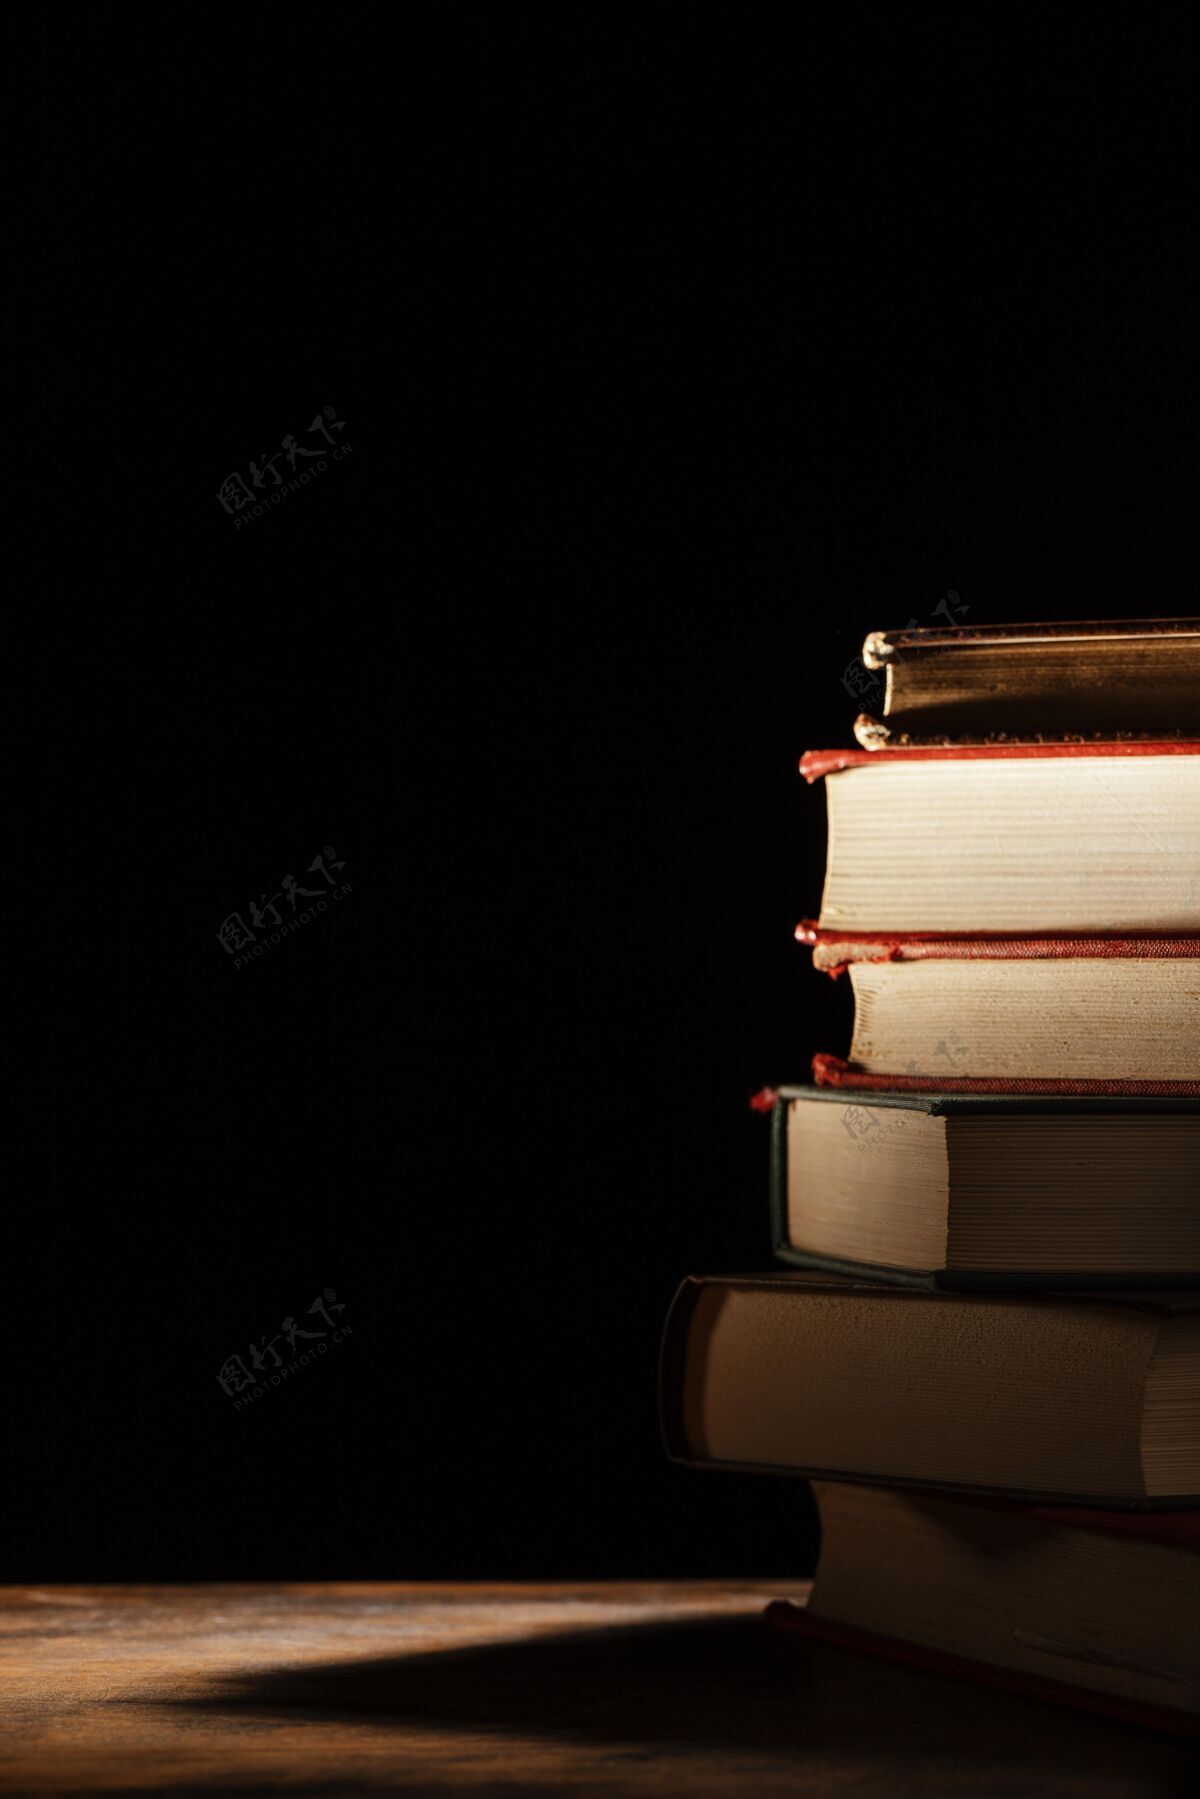 教育与书籍和黑暗的背景搭配文献排列框架